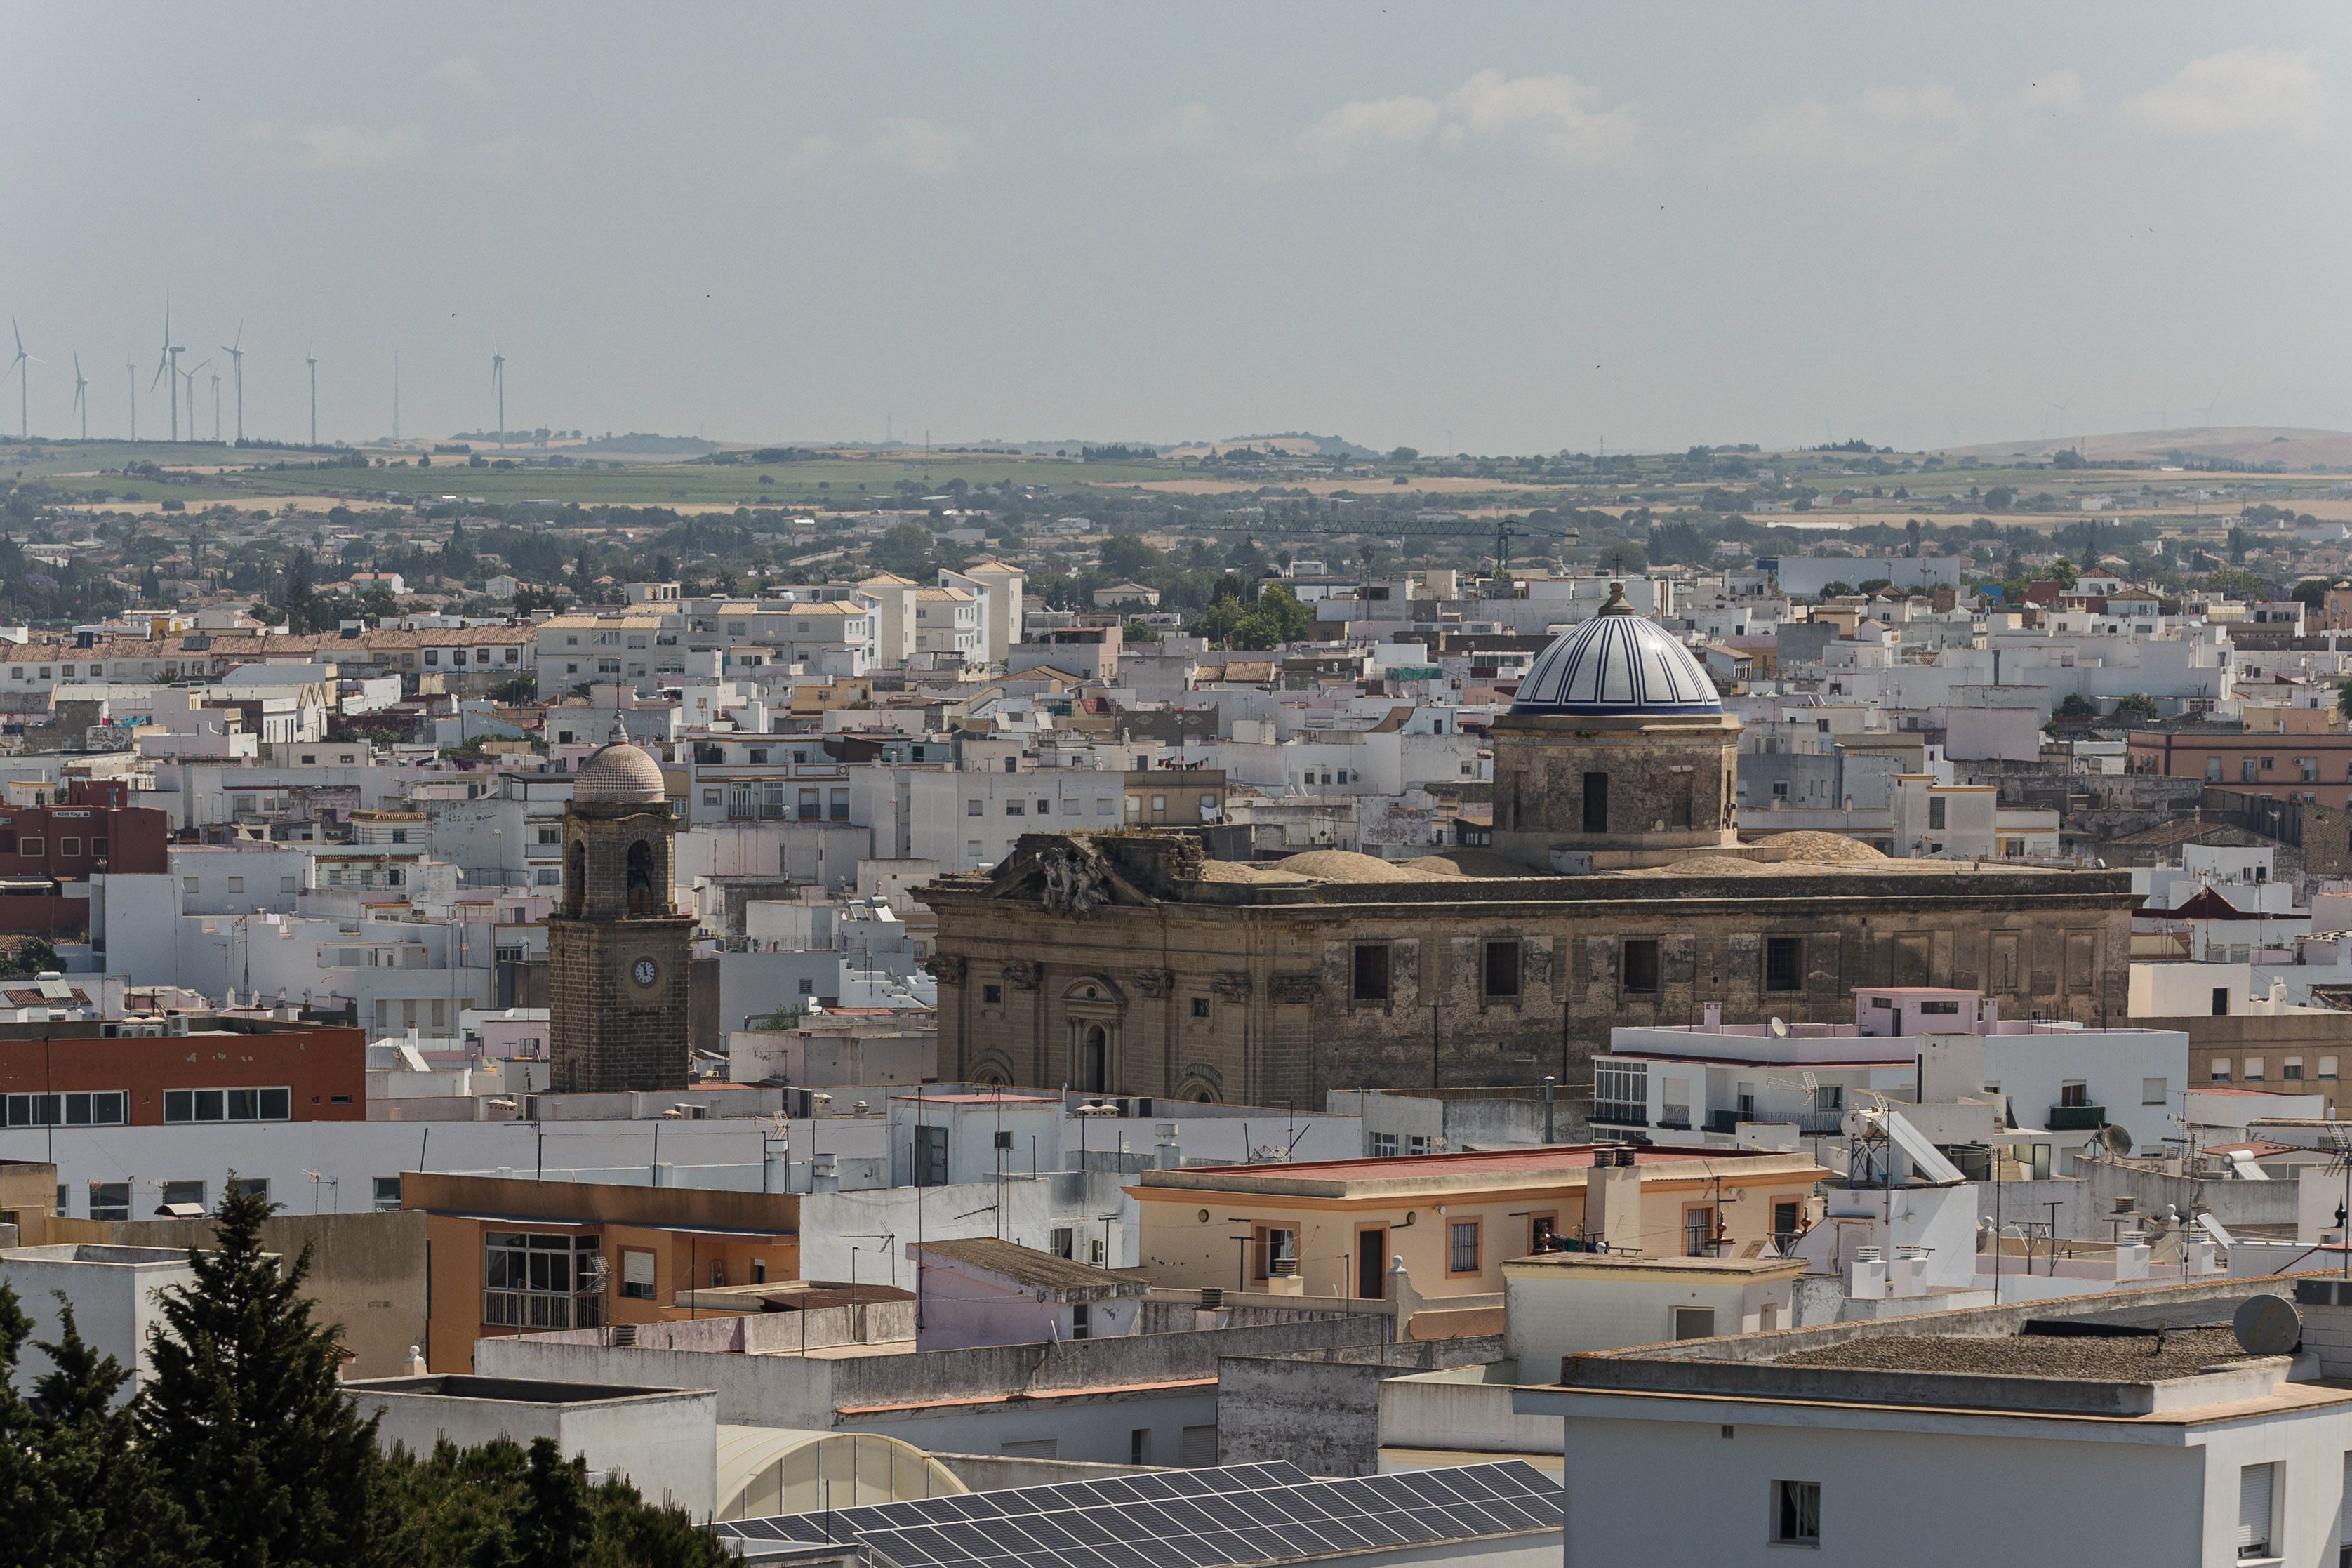 Vista panorámica de Chiclana con la iglesia mayor San Juan Bautista dominando el paisaje.